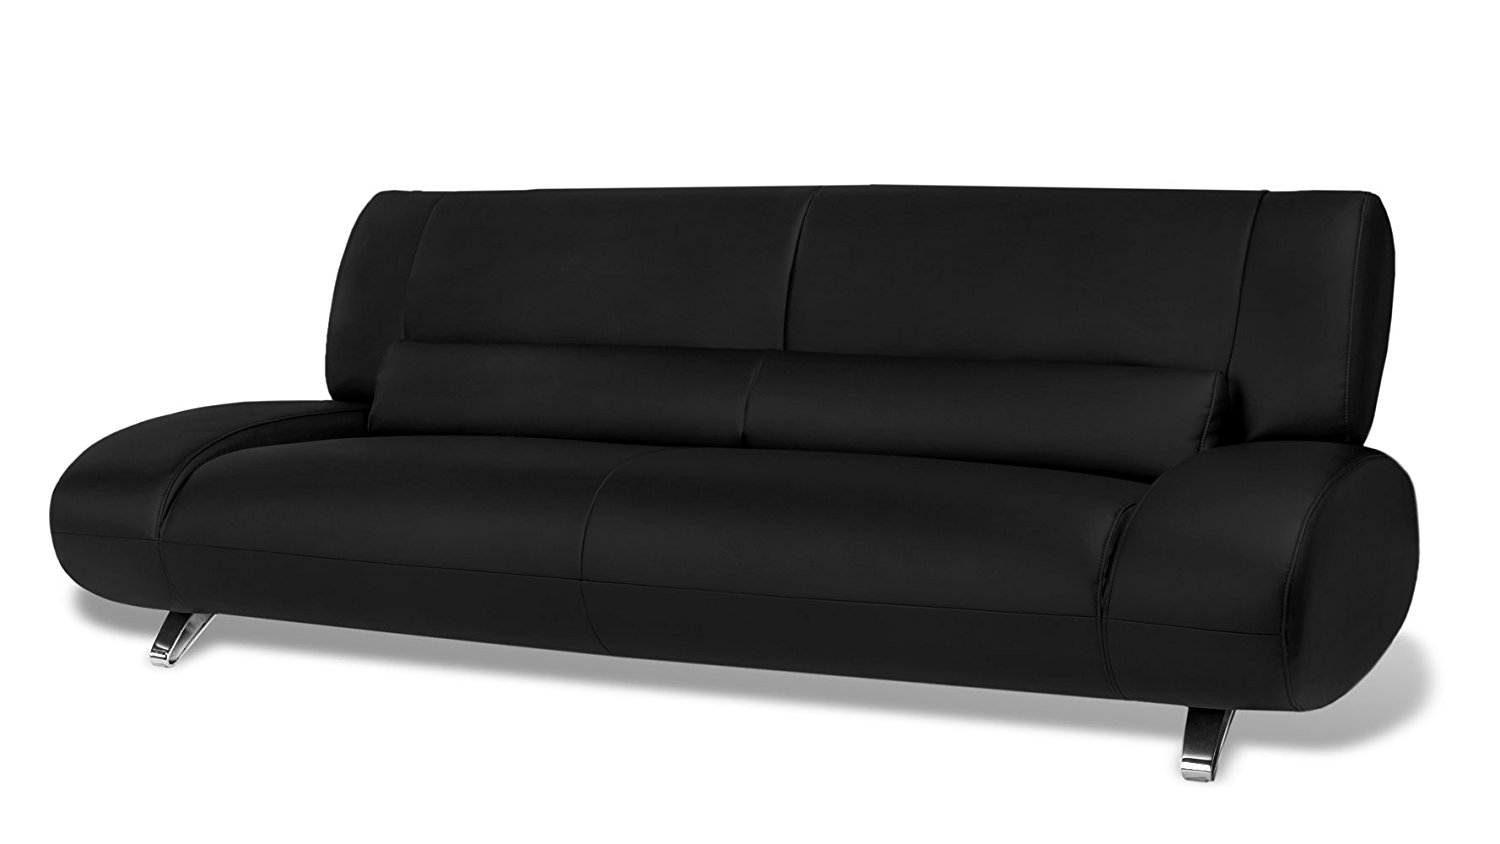 aspen regis leather sofa